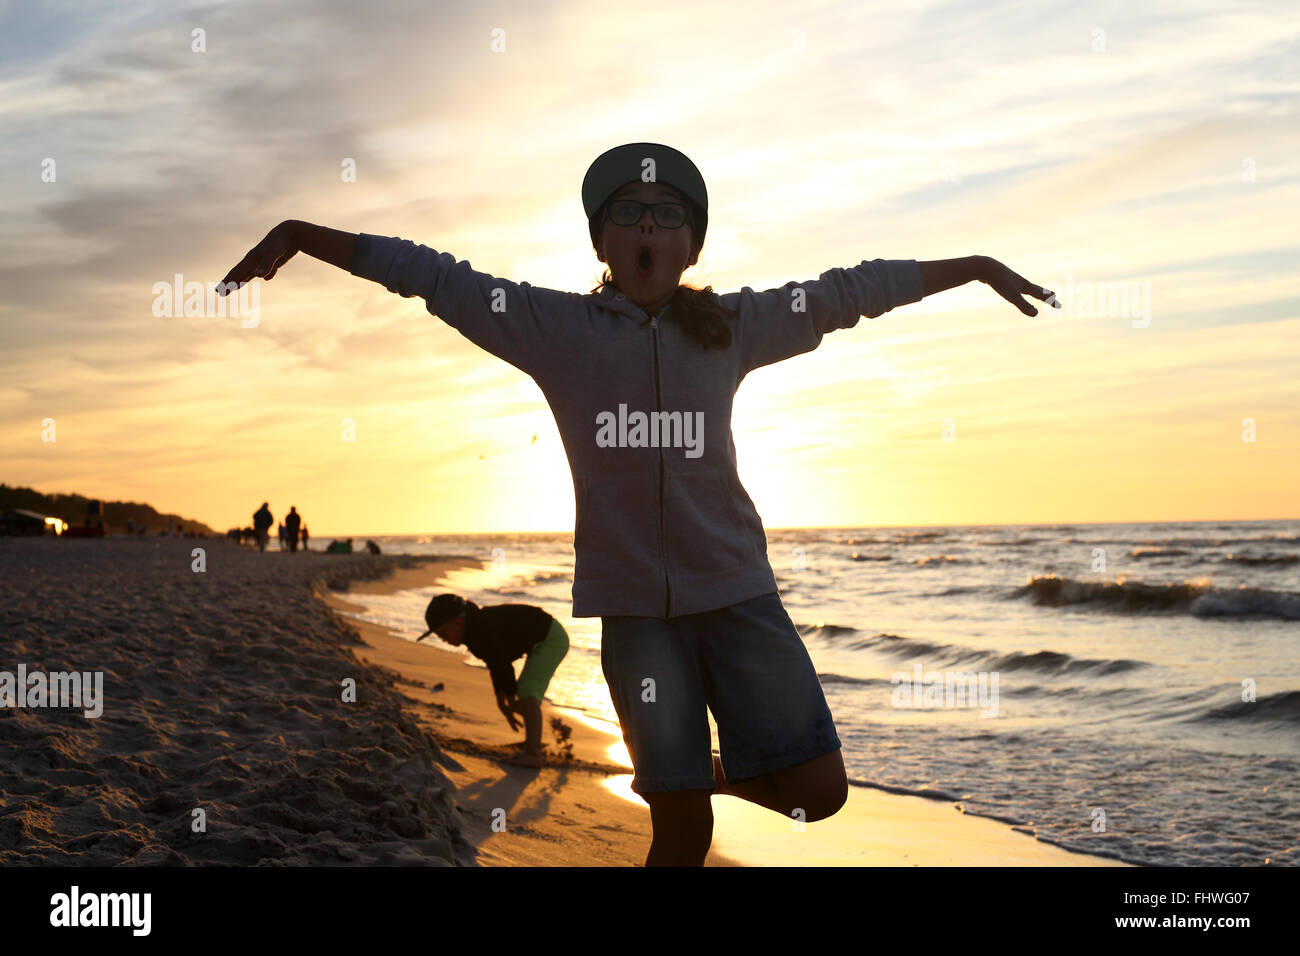 Vacaciones! La niña salta alto en una playa de arena Foto de stock